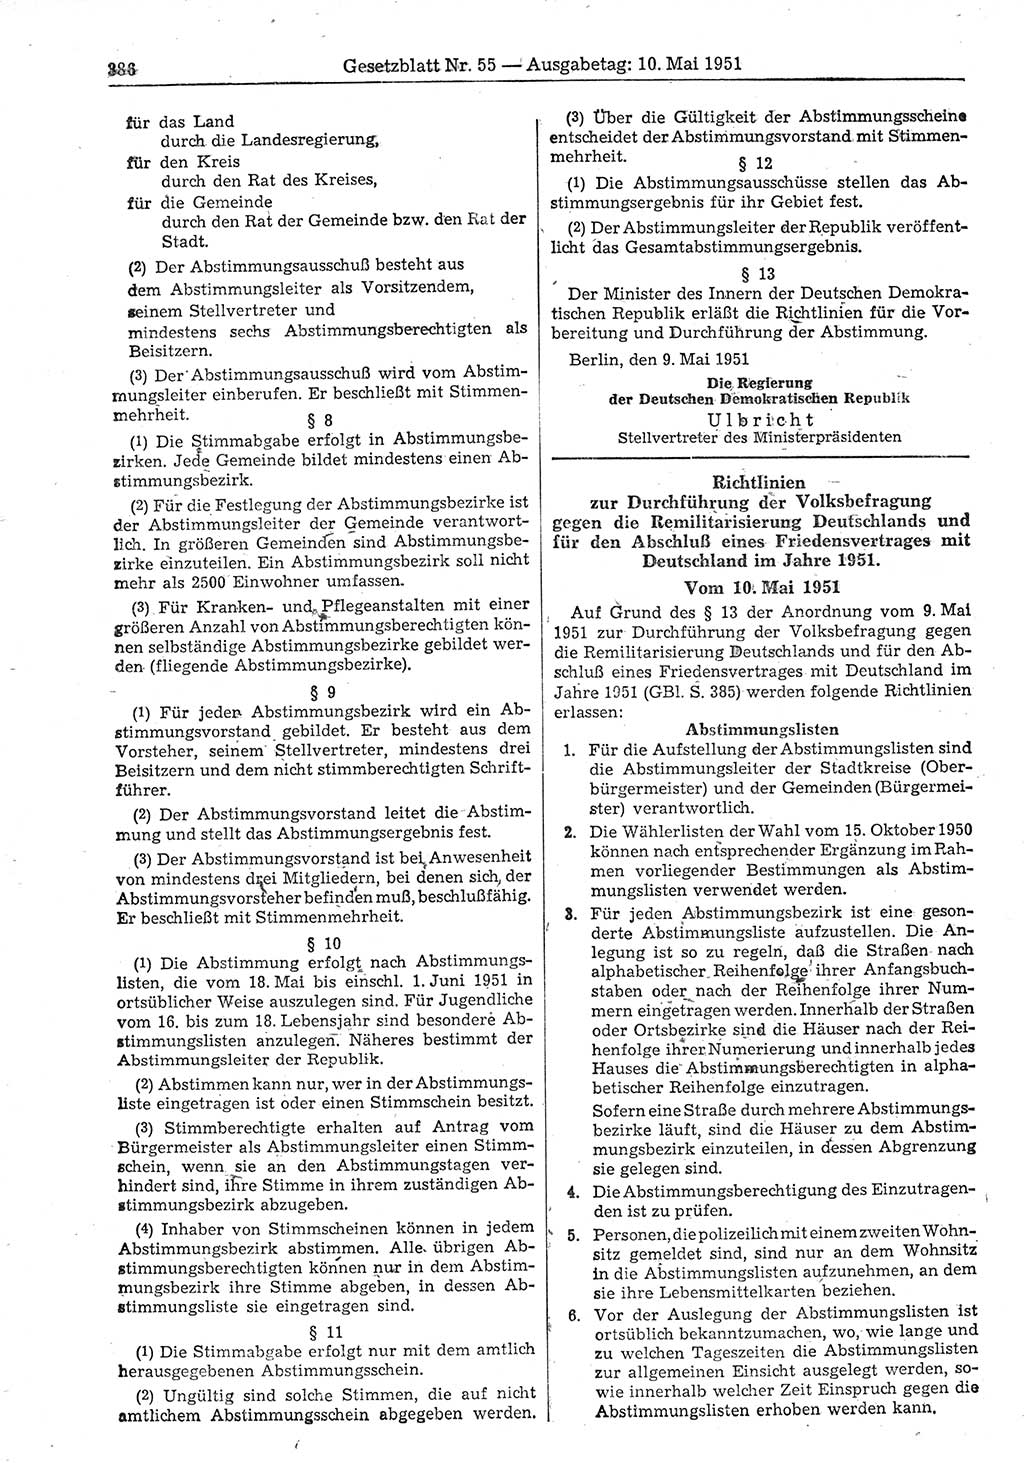 Gesetzblatt (GBl.) der Deutschen Demokratischen Republik (DDR) 1951, Seite 386 (GBl. DDR 1951, S. 386)